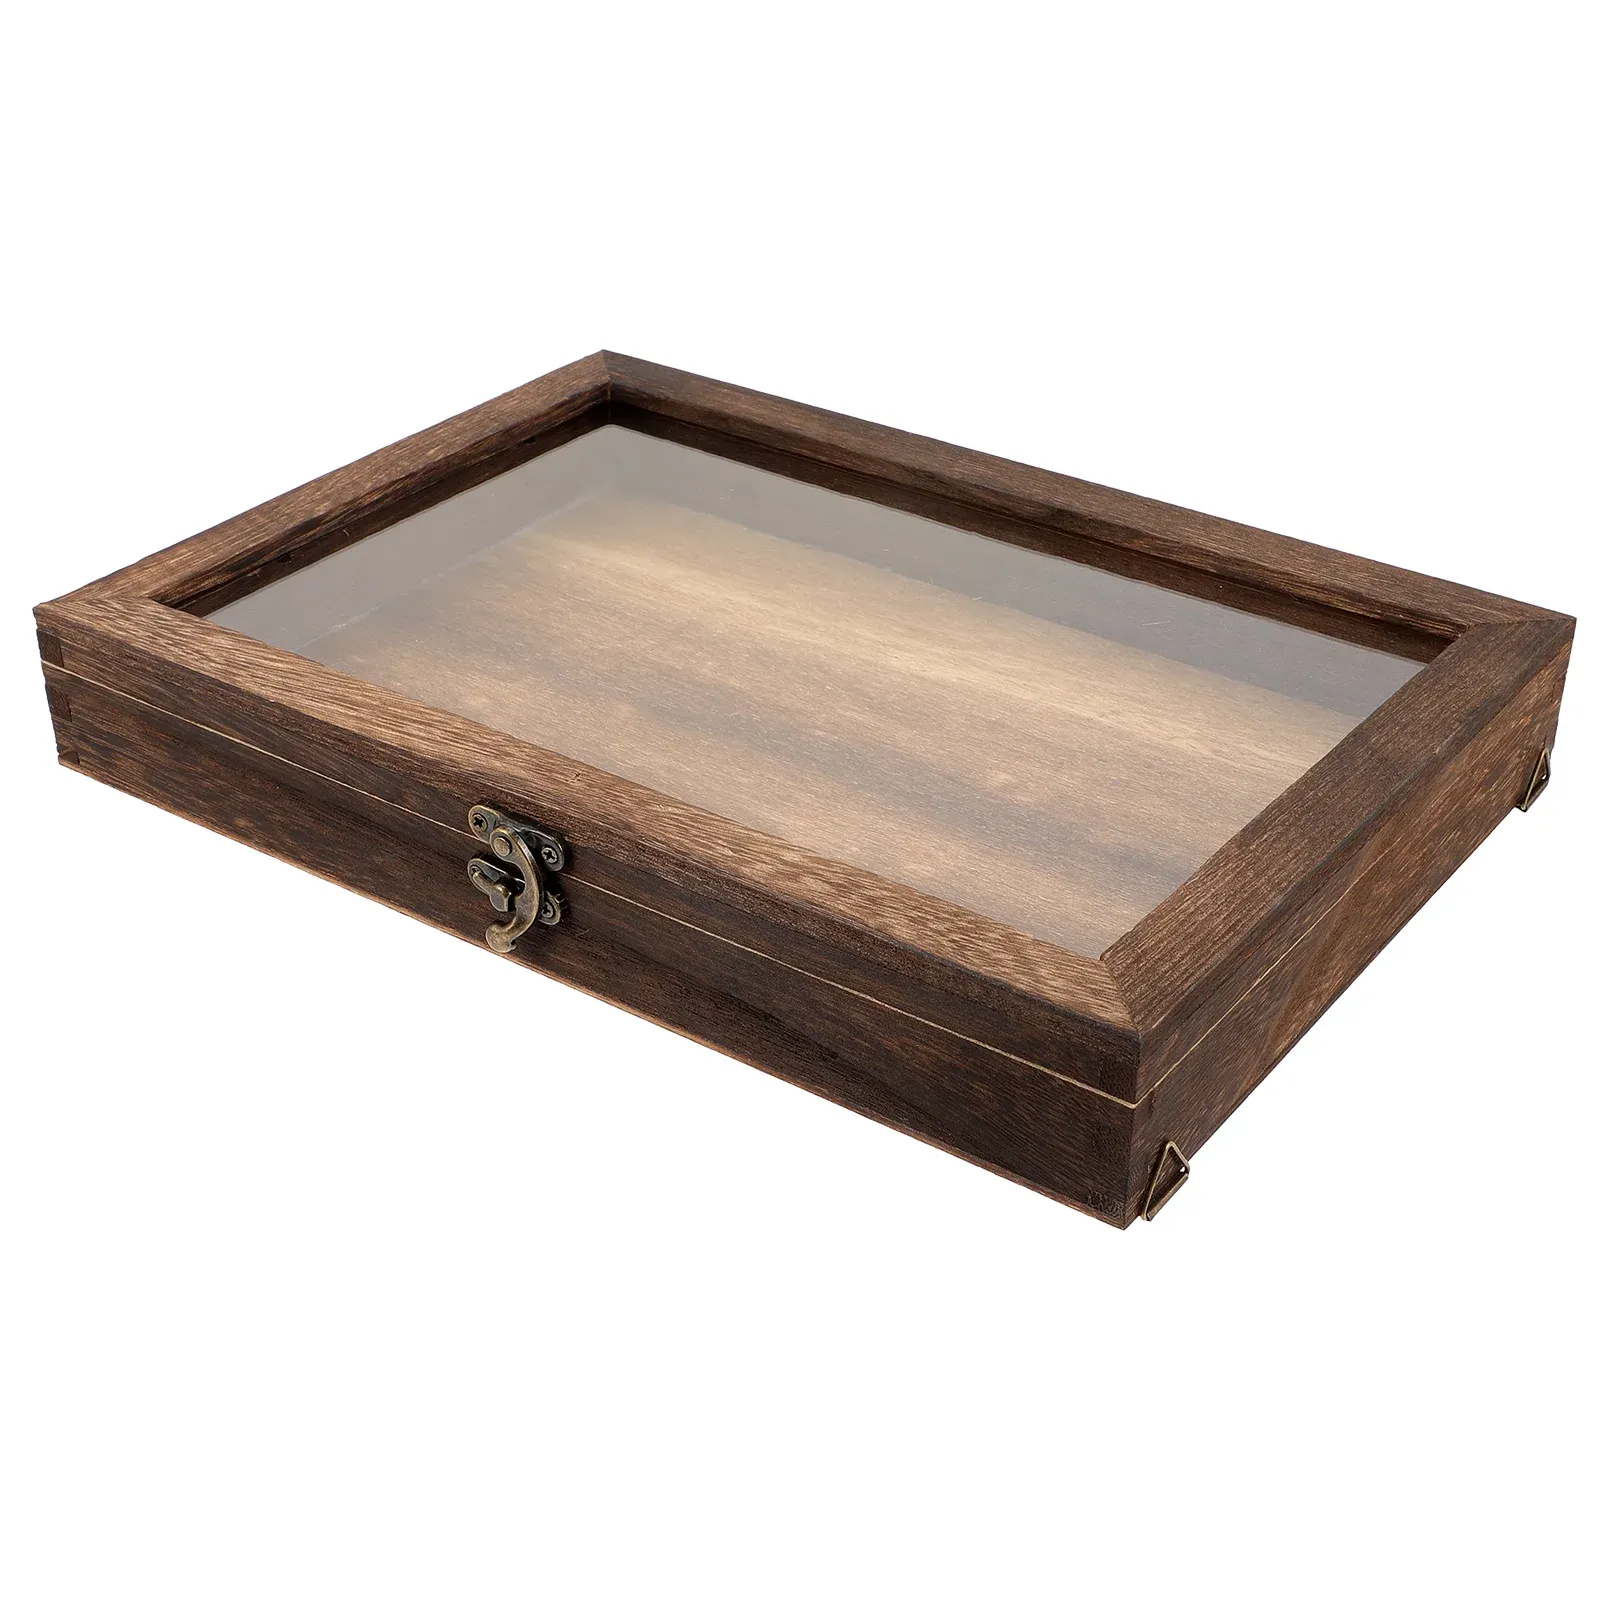 Дисплей винтаж образец коробка винтажная фоторамка деревянная ювелирная коробка деревянная коробка теневая коробка стеклянная деревянная витрина